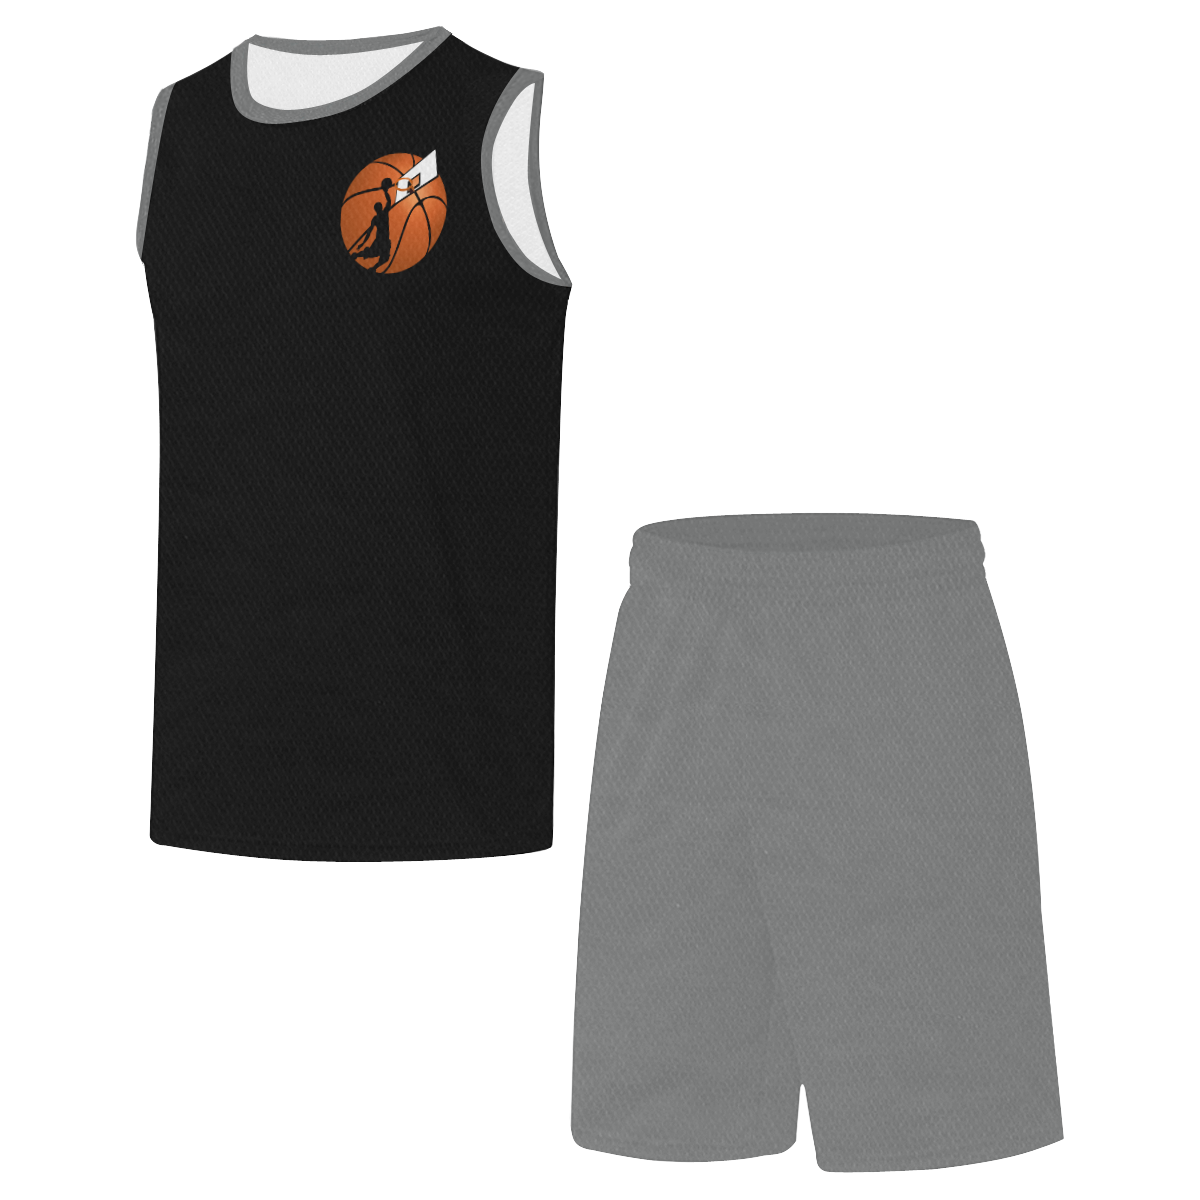 Slam Dunk Basketball Player Black and Gray All Over Print Basketball Uniform